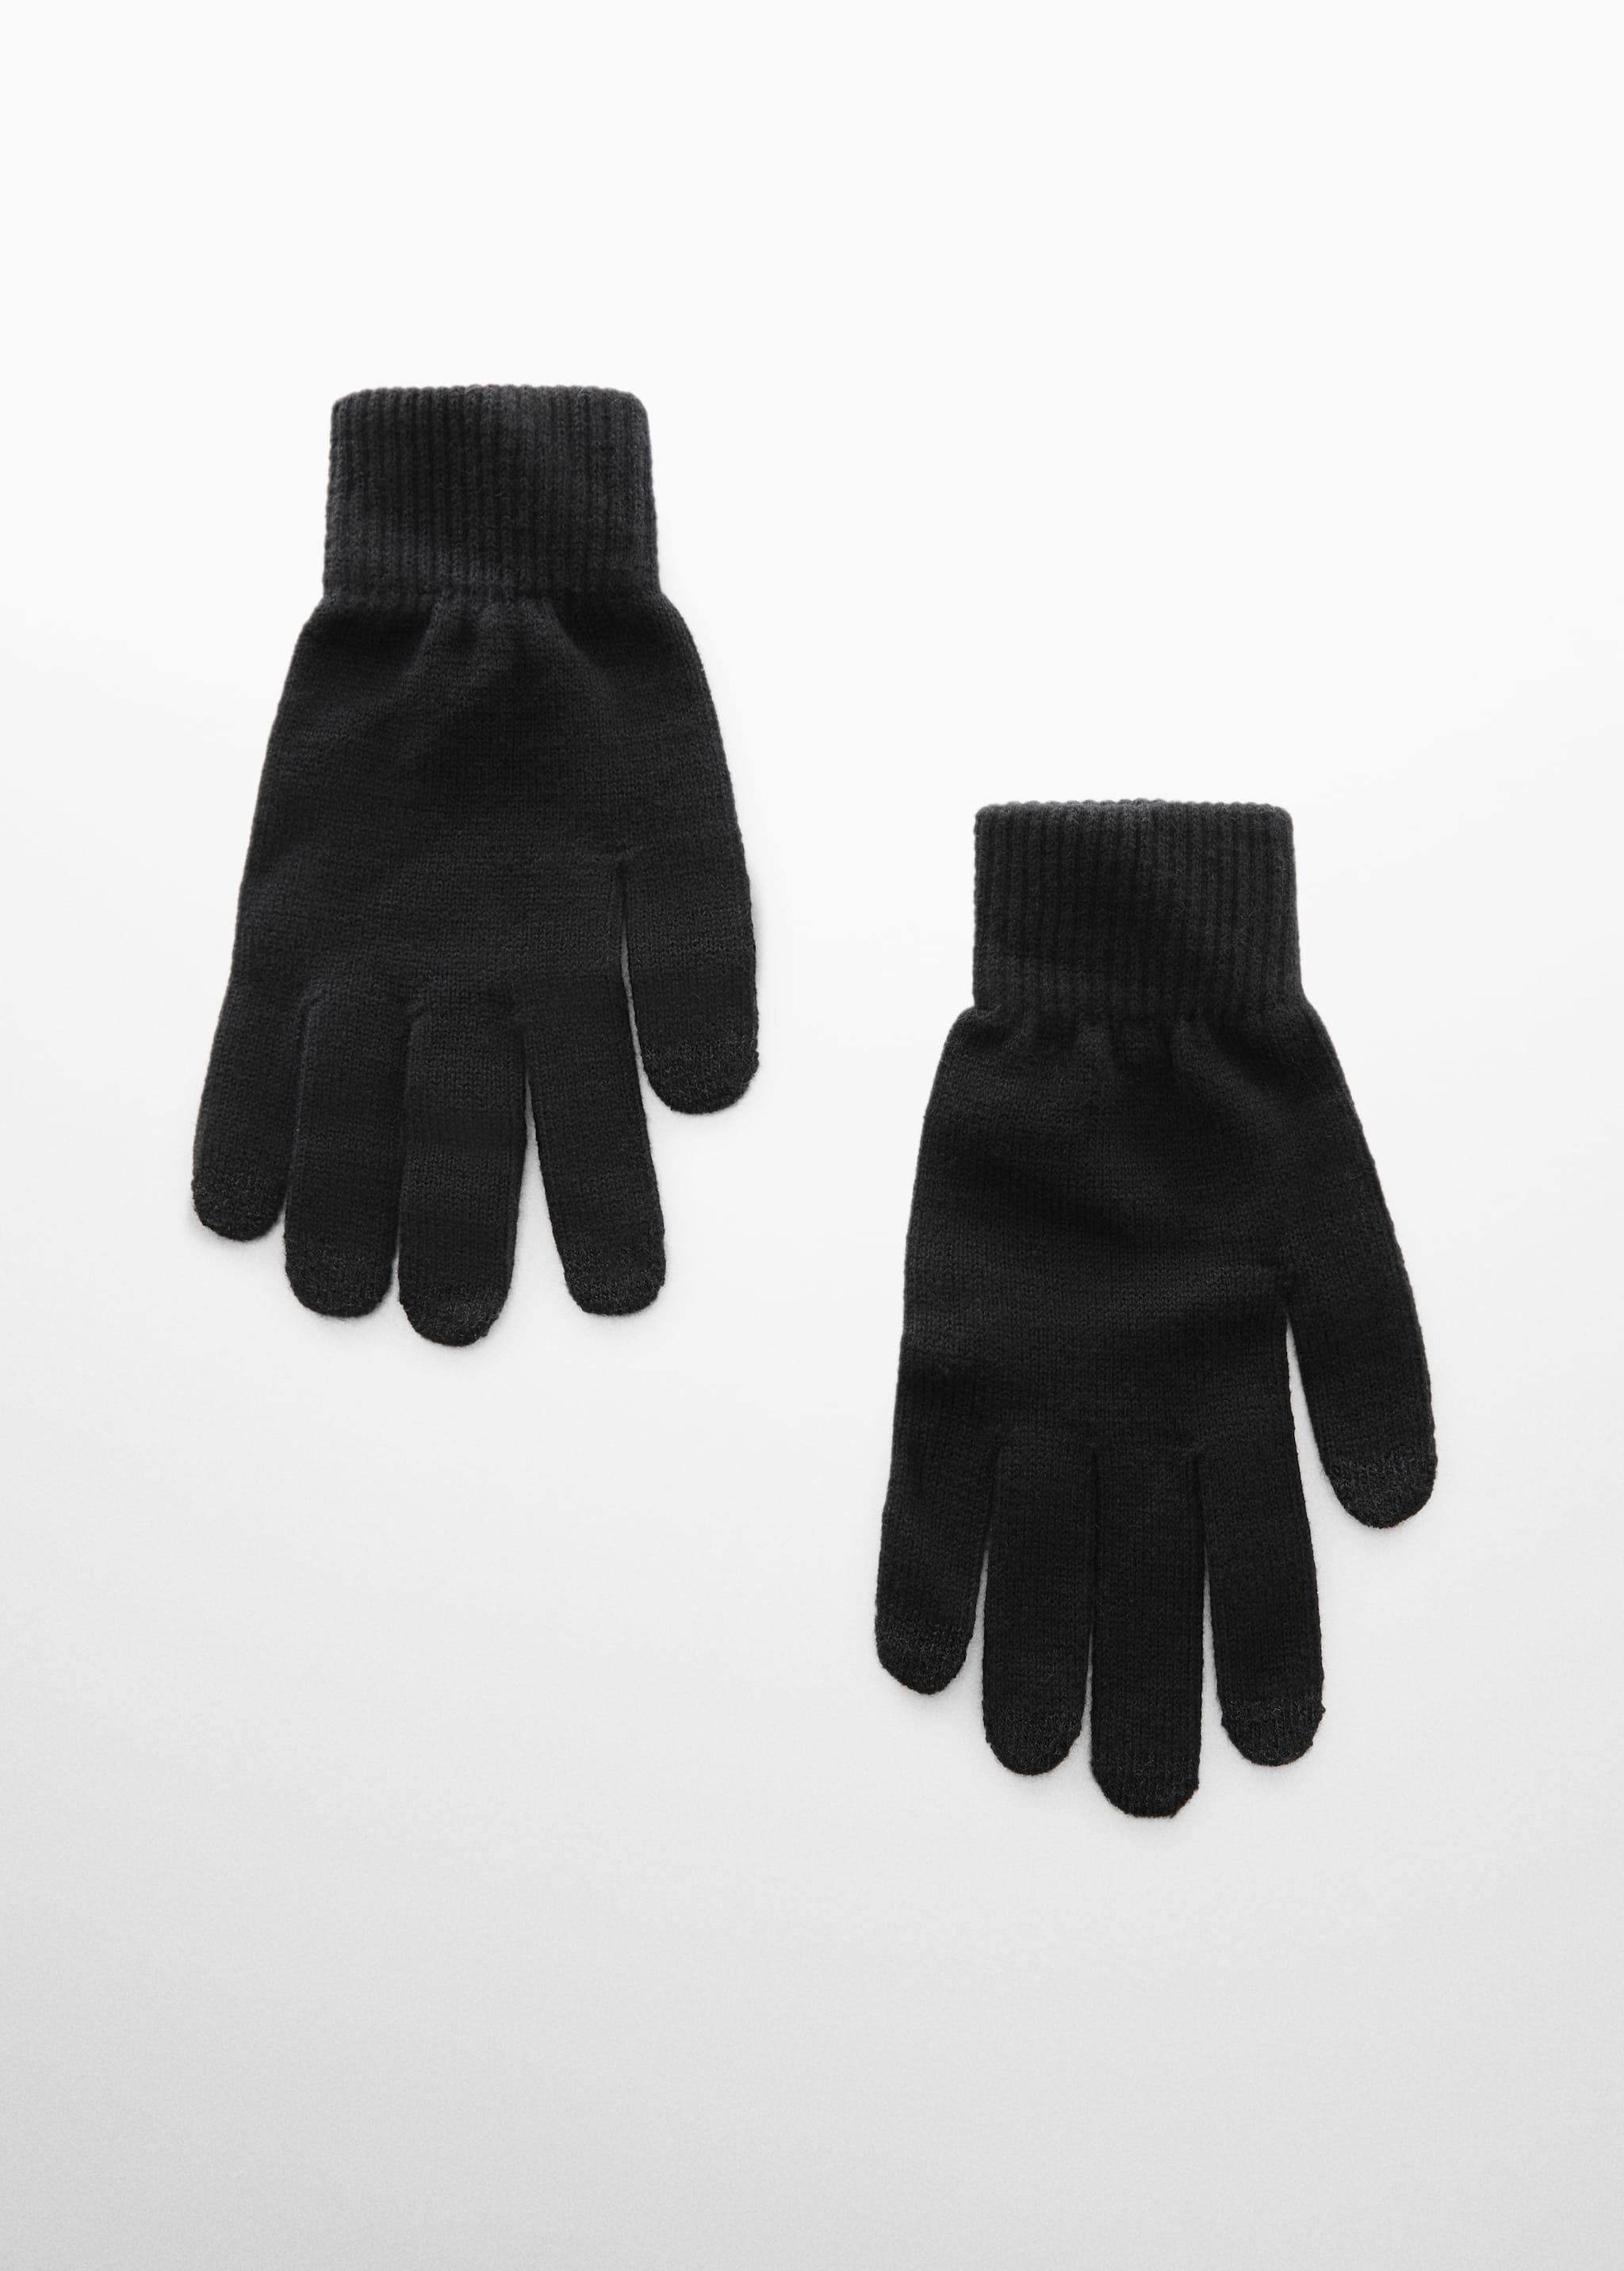 Сенсорные перчатки из трикотажа - Изделие без модели